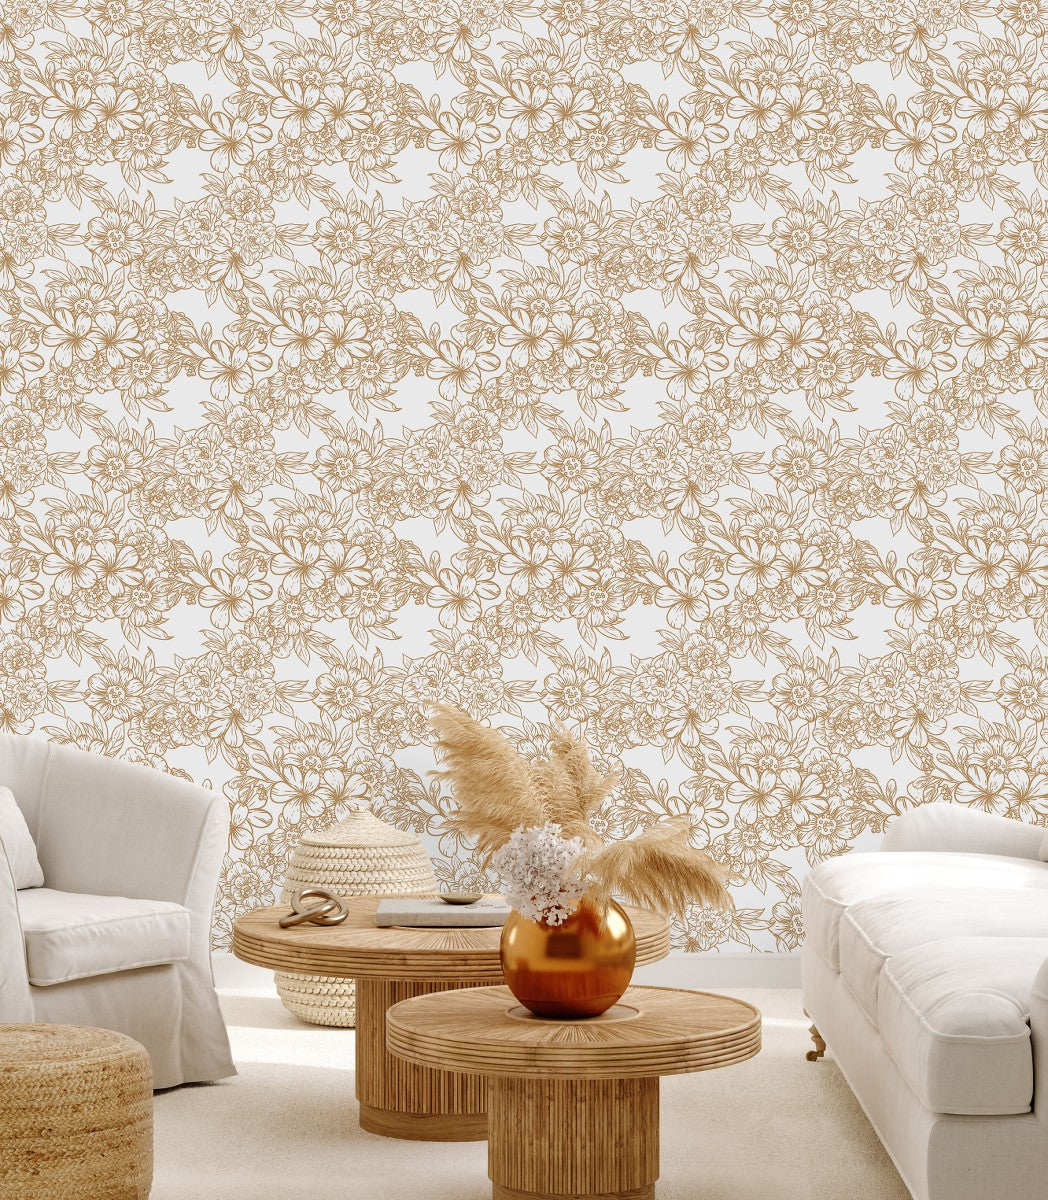 338038 Golden Flower Wallpaper Images Stock Photos  Vectors   Shutterstock